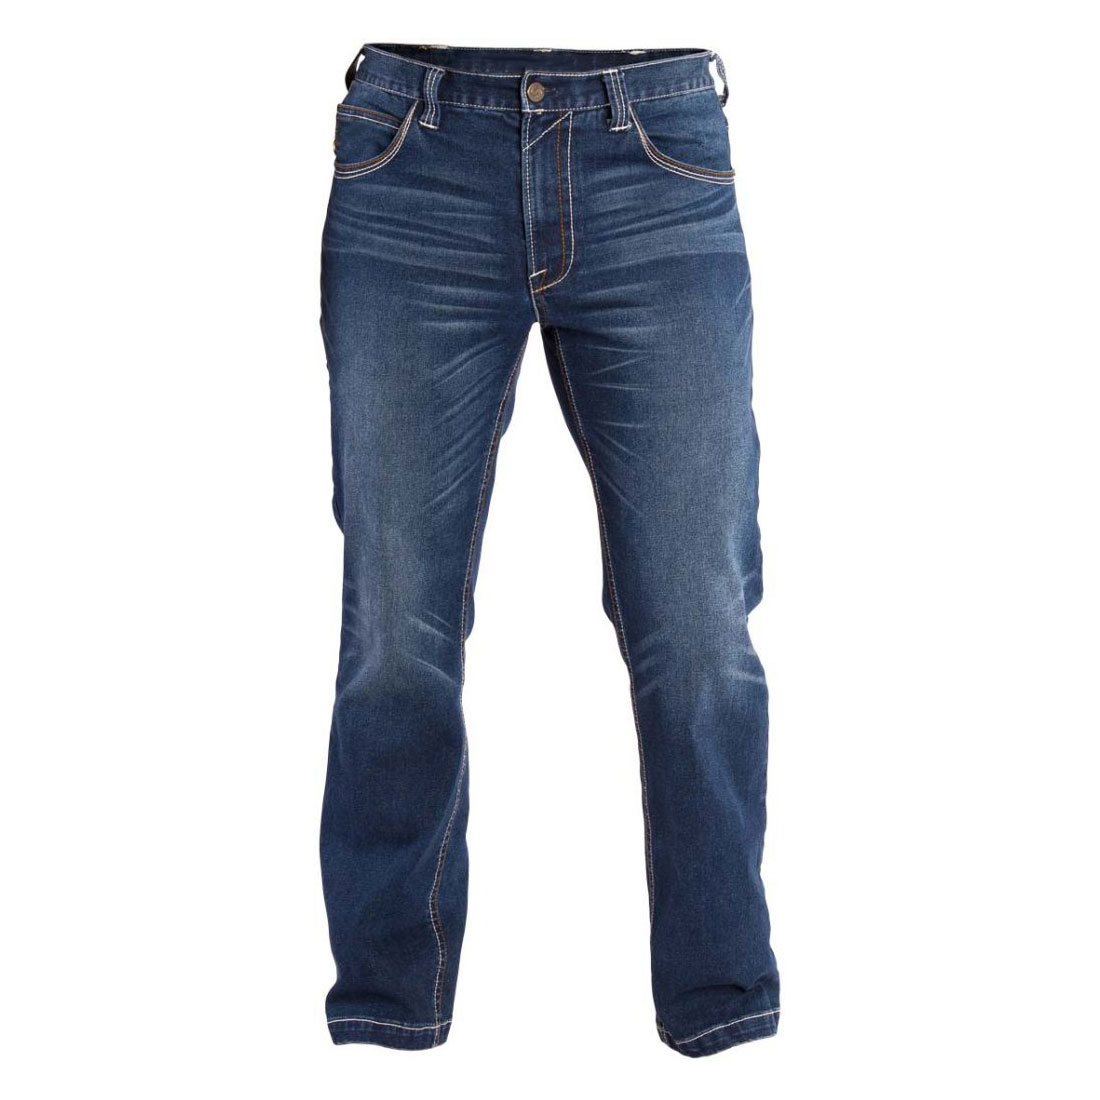 FR Standard Denim Jeans - Epic Unlimited